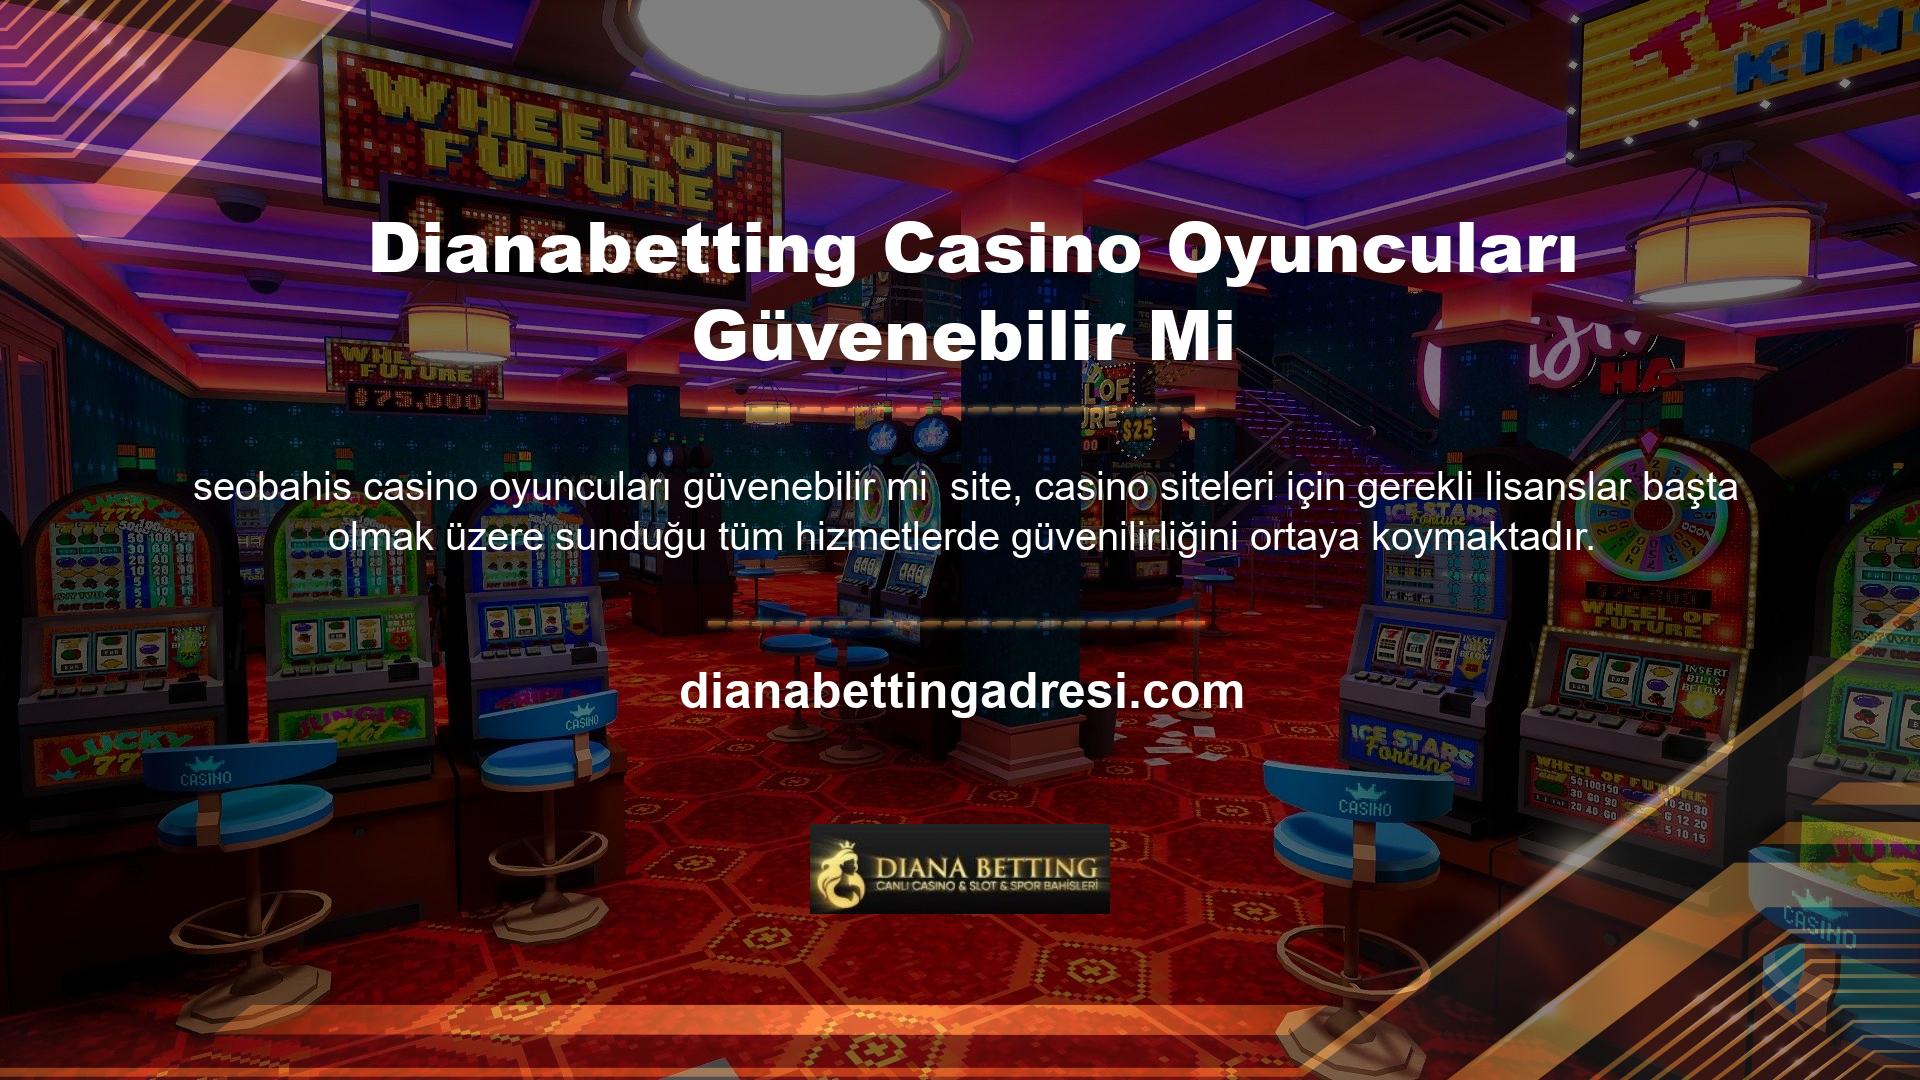 Oyuncular için asıl endişe, oyun oynamalarına izin veren çevrimiçi casinoların güvenilirliğidir